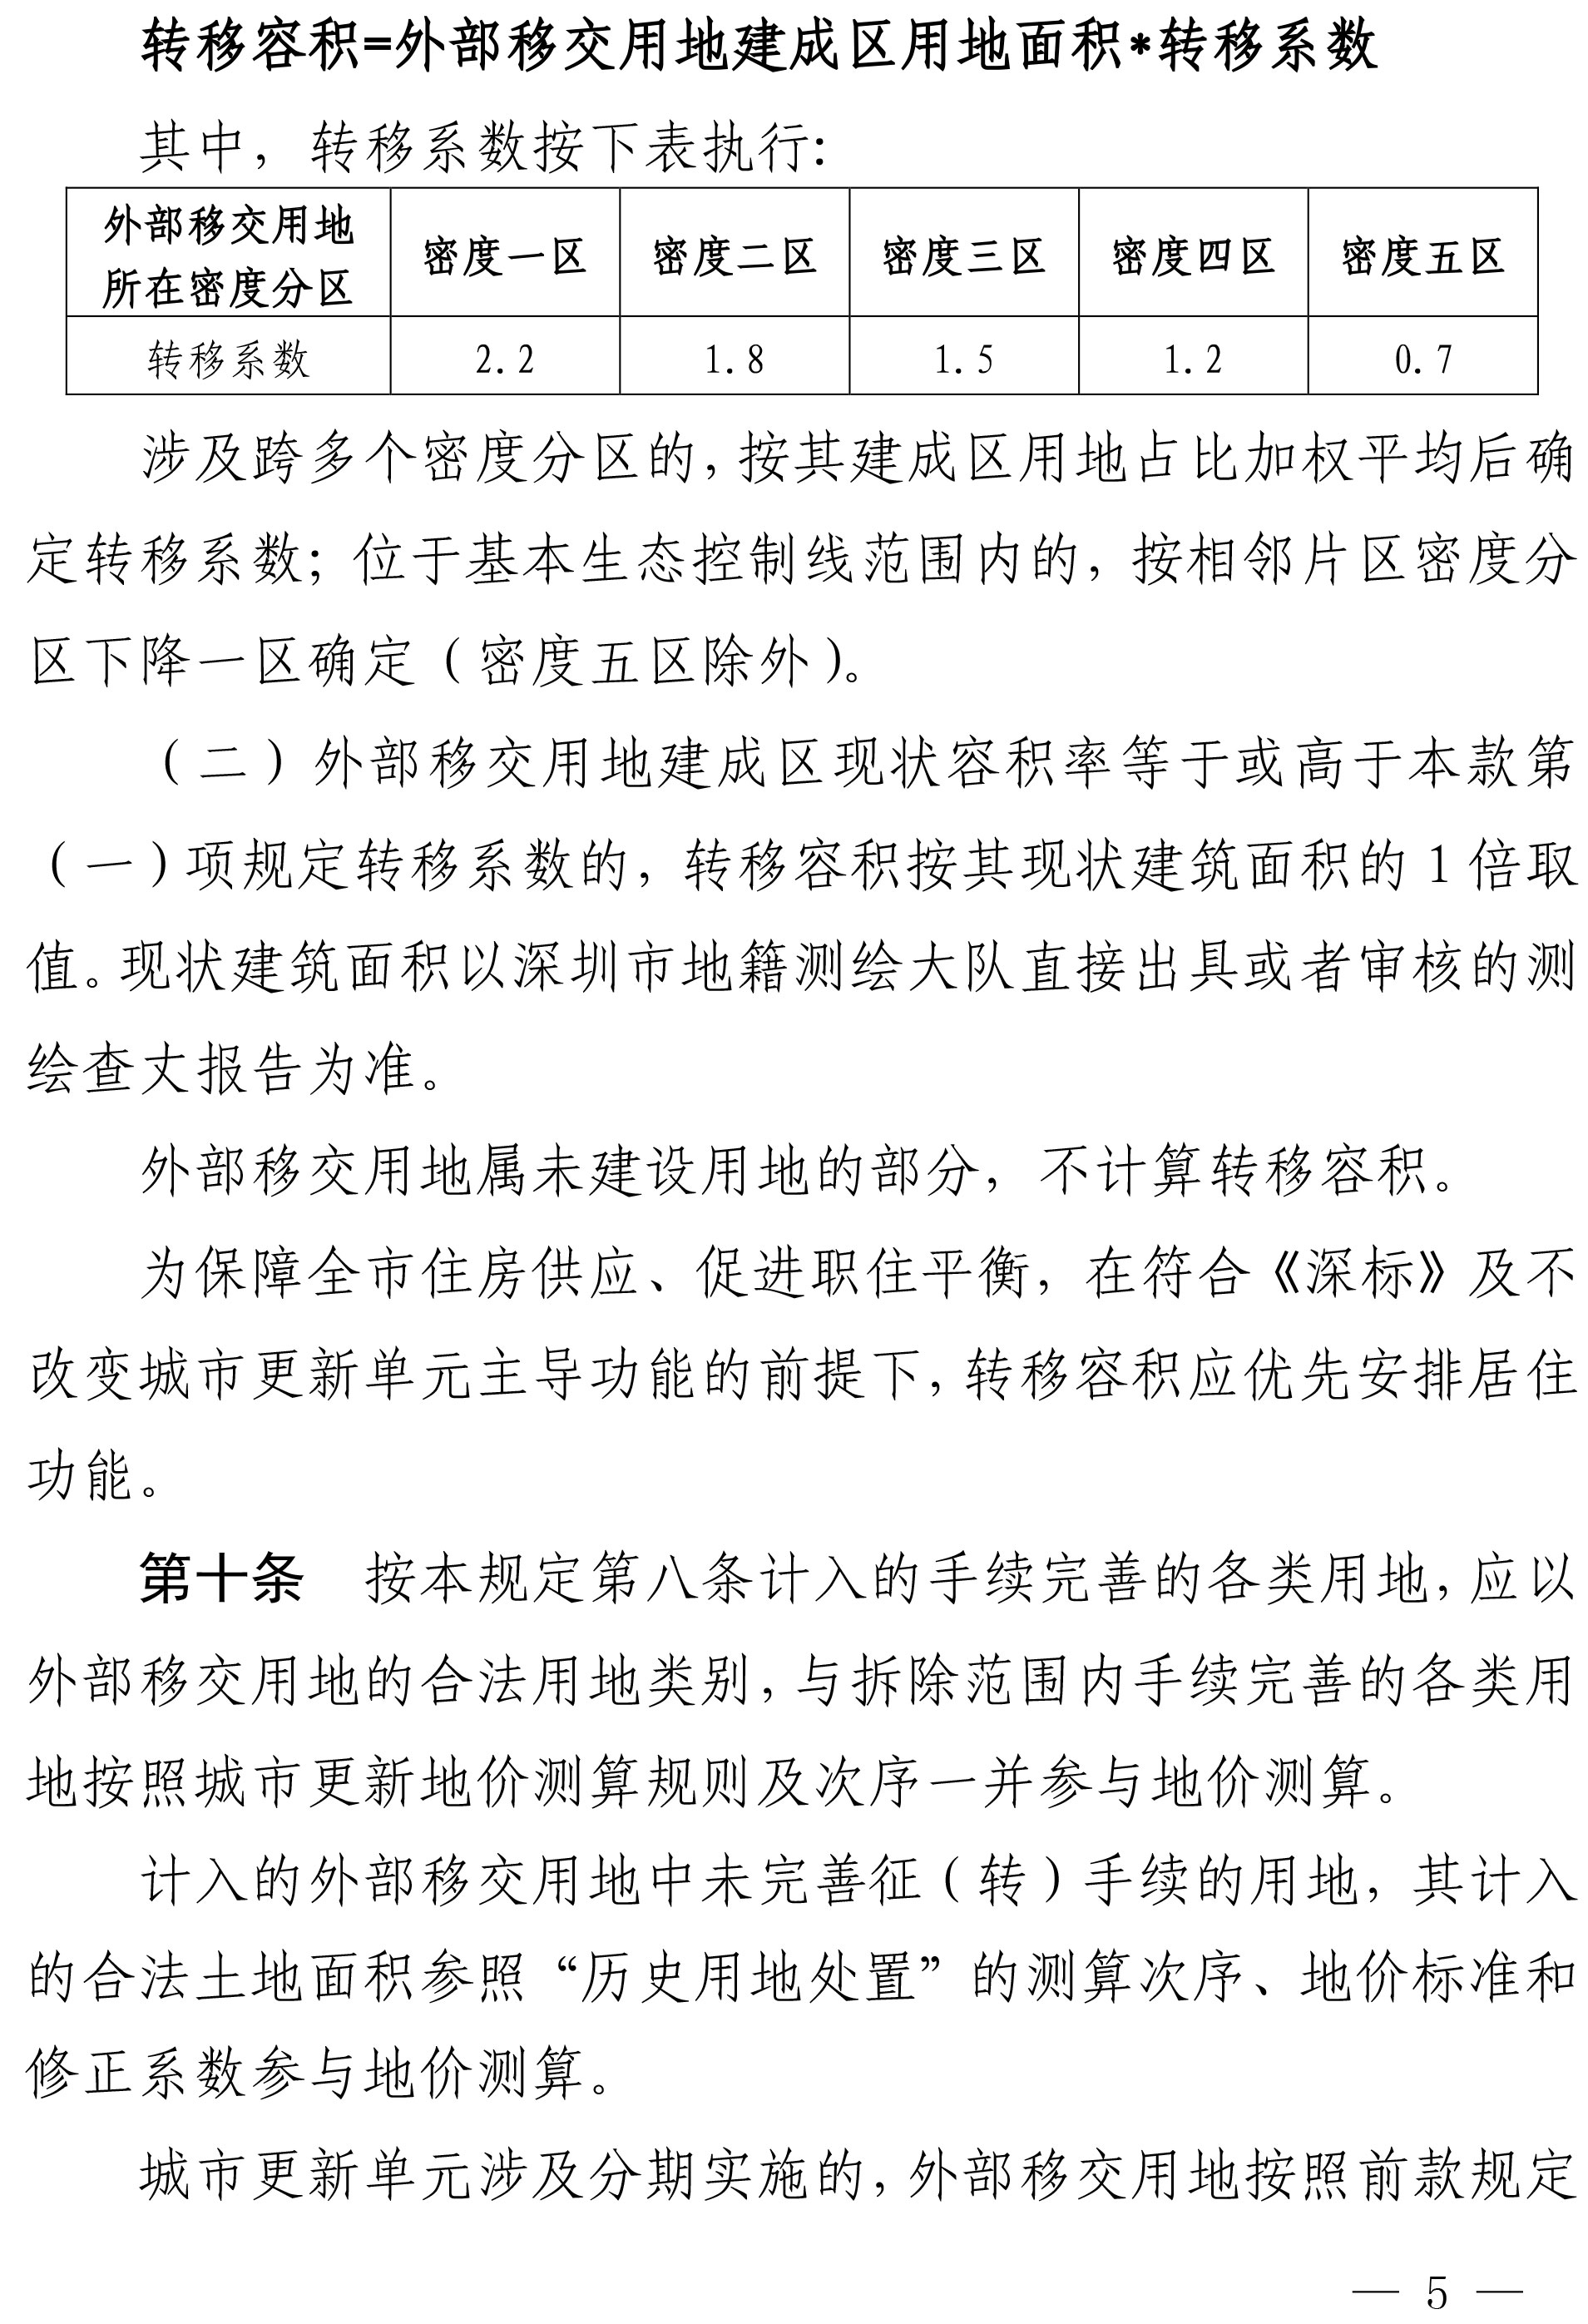 深圳市城市更新外部移交公共设施用地实施管理规定-5.jpg